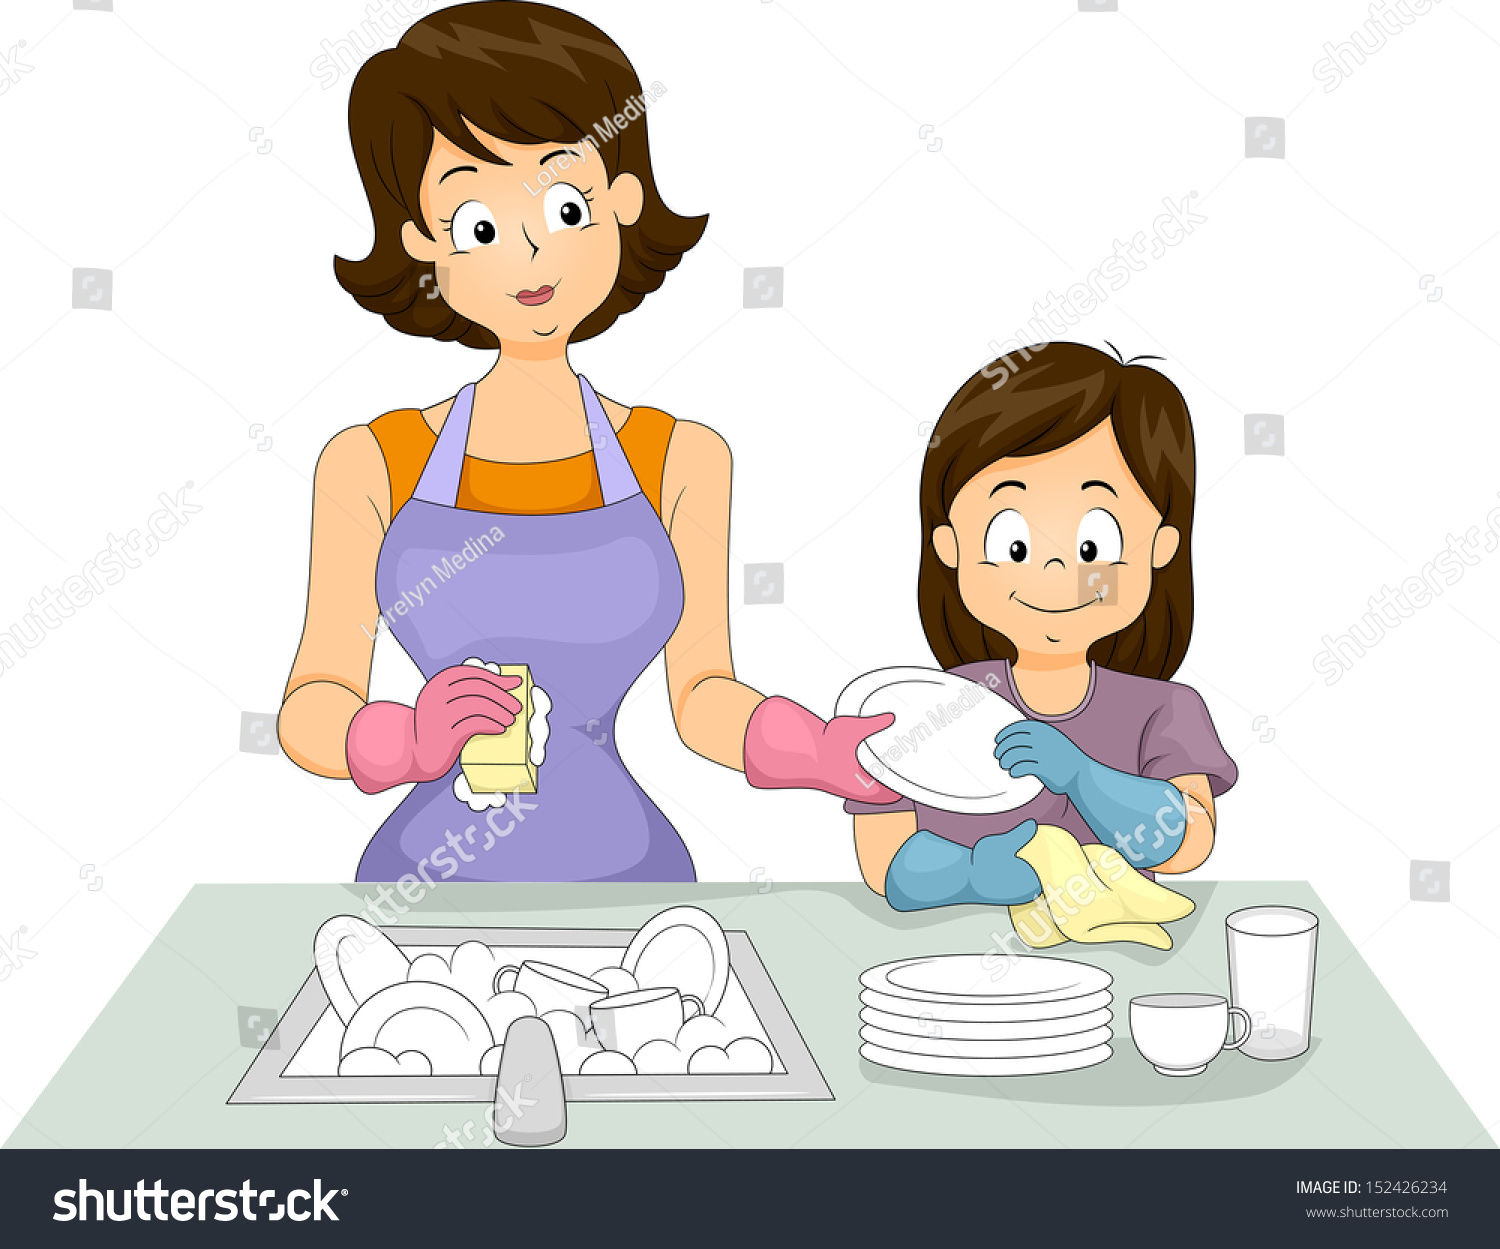 Картина мама моет посуду